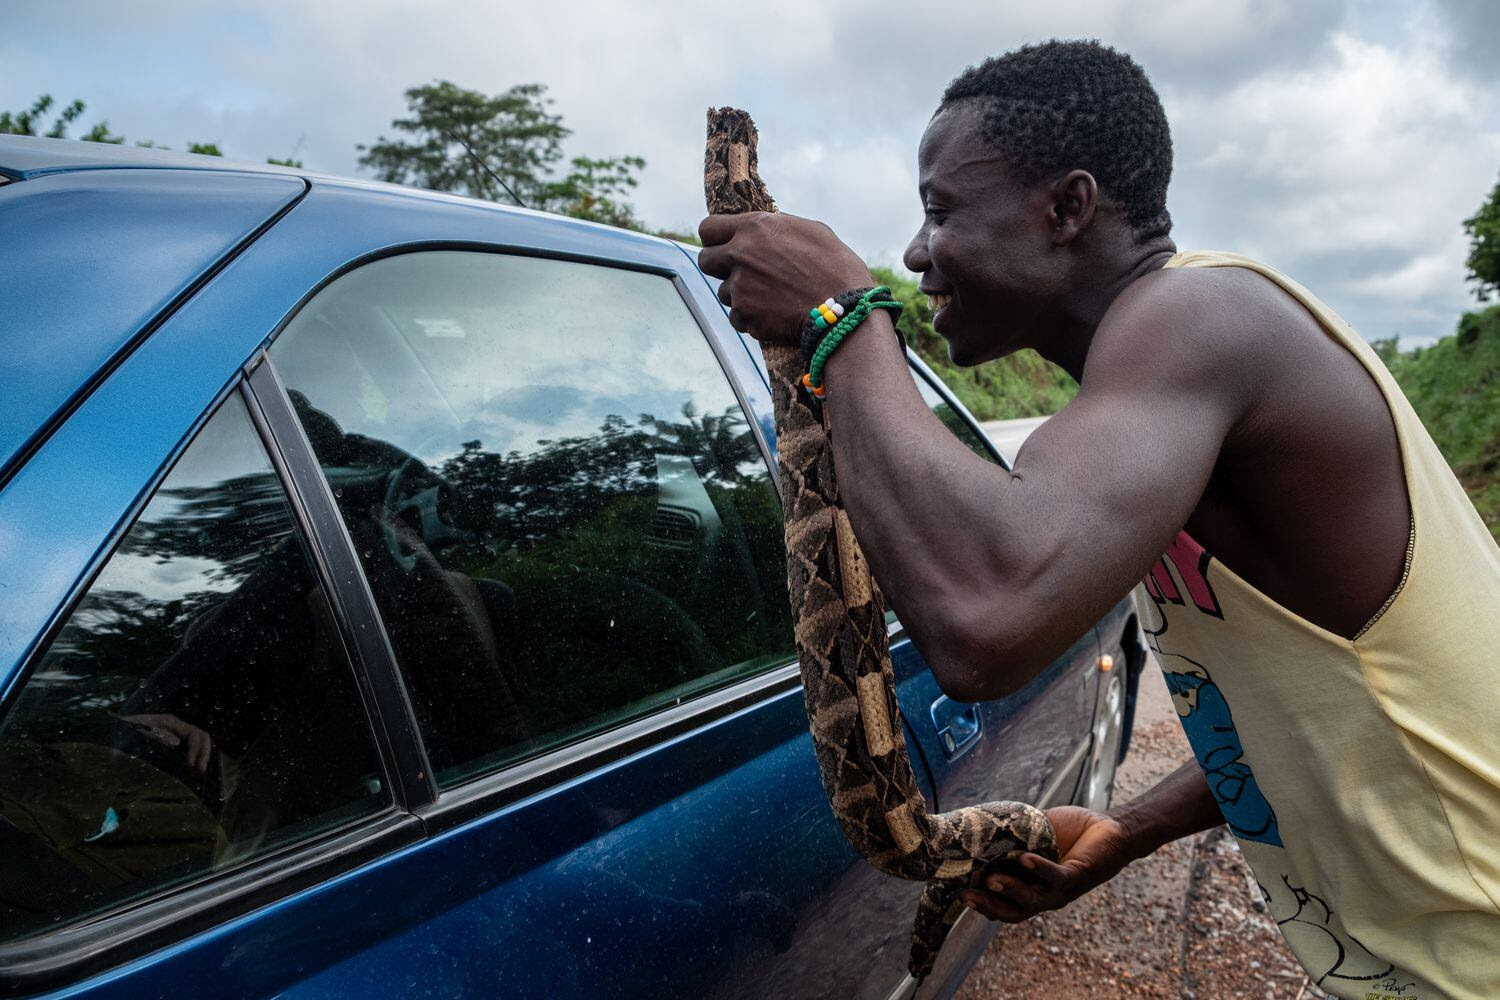 Un hombre sostiene un trozo de serpiente junto a la ventana de un automóvil que pasa por una carretera costamarfileña, con la esperanza de vender la carne. Pincha en la imagen para ver la fotogalería completa.